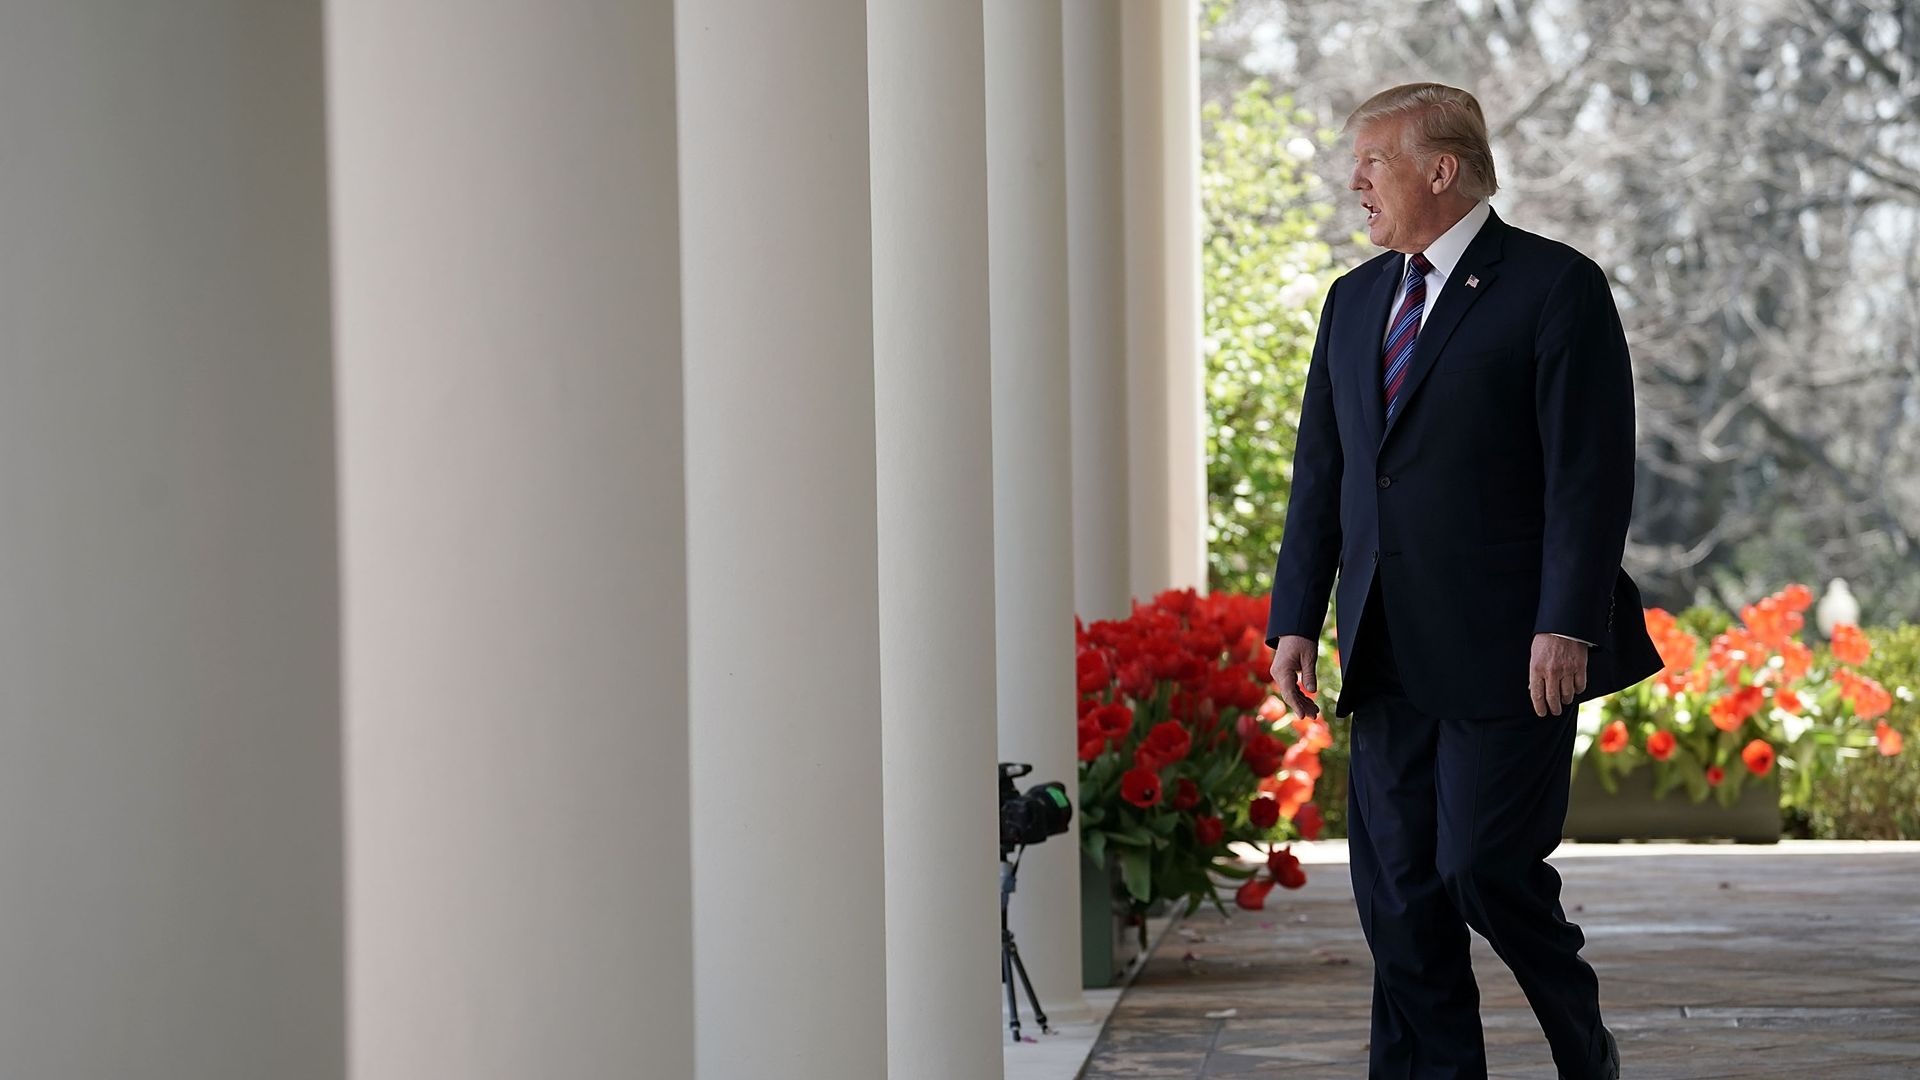 Trump enters the Rose Garden through columns